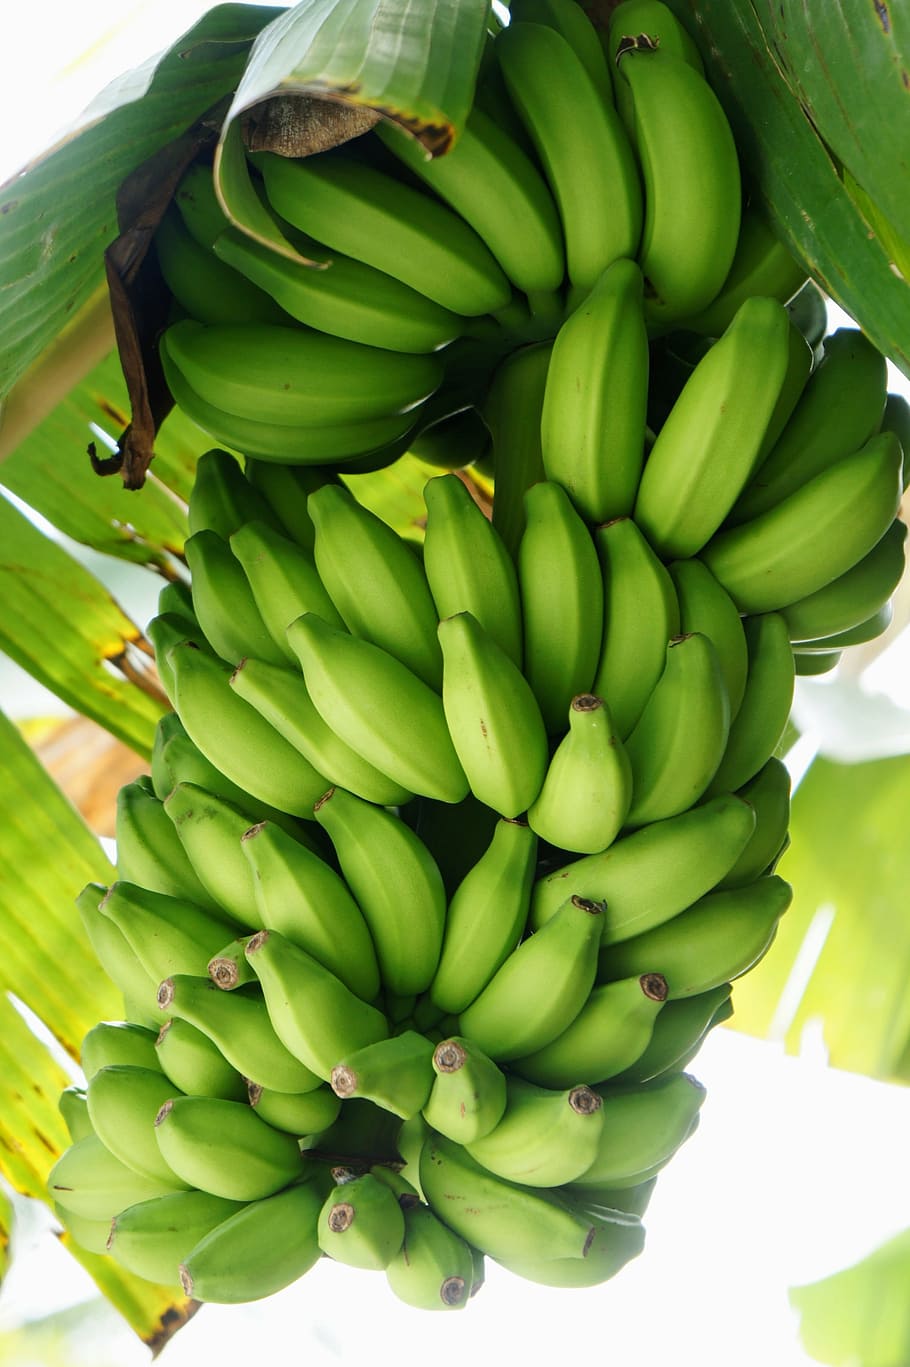 pisang mentah, pisang, semak, semak pisang, kuning, sehat, buah, warna hijau, makanan dan minuman, makanan